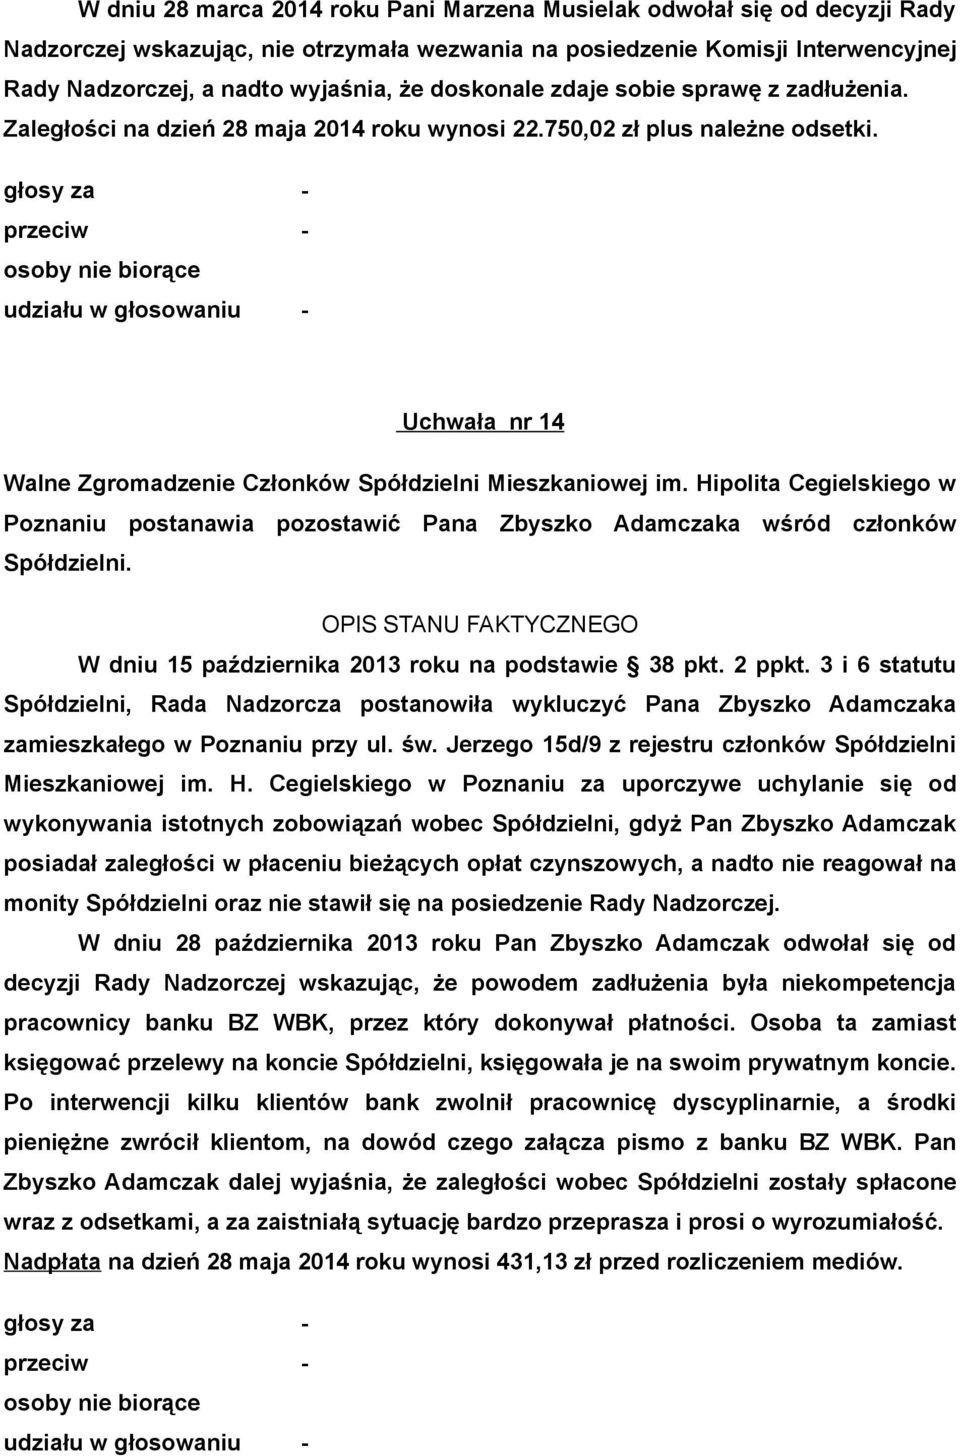 Uchwała nr 14 Poznaniu postanawia pozostawić Pana Zbyszko Adamczaka wśród członków Spółdzielni. OPIS STANU FAKTYCZNEGO W dniu 15 października 2013 roku na podstawie 38 pkt. 2 ppkt.